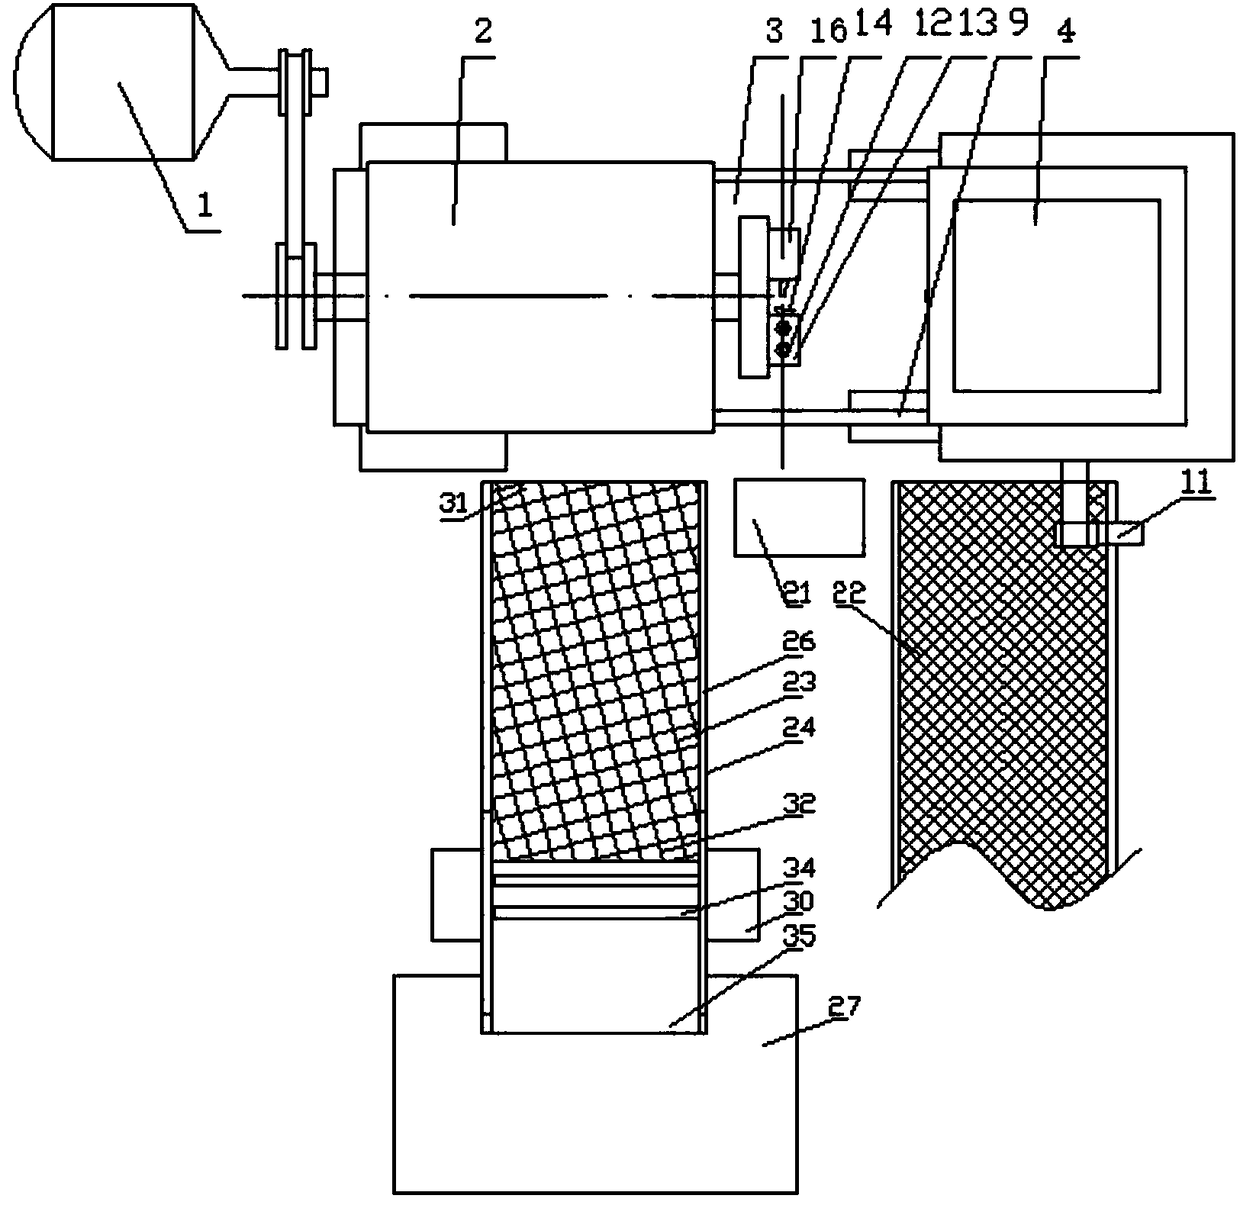 Fillet system for valve stem